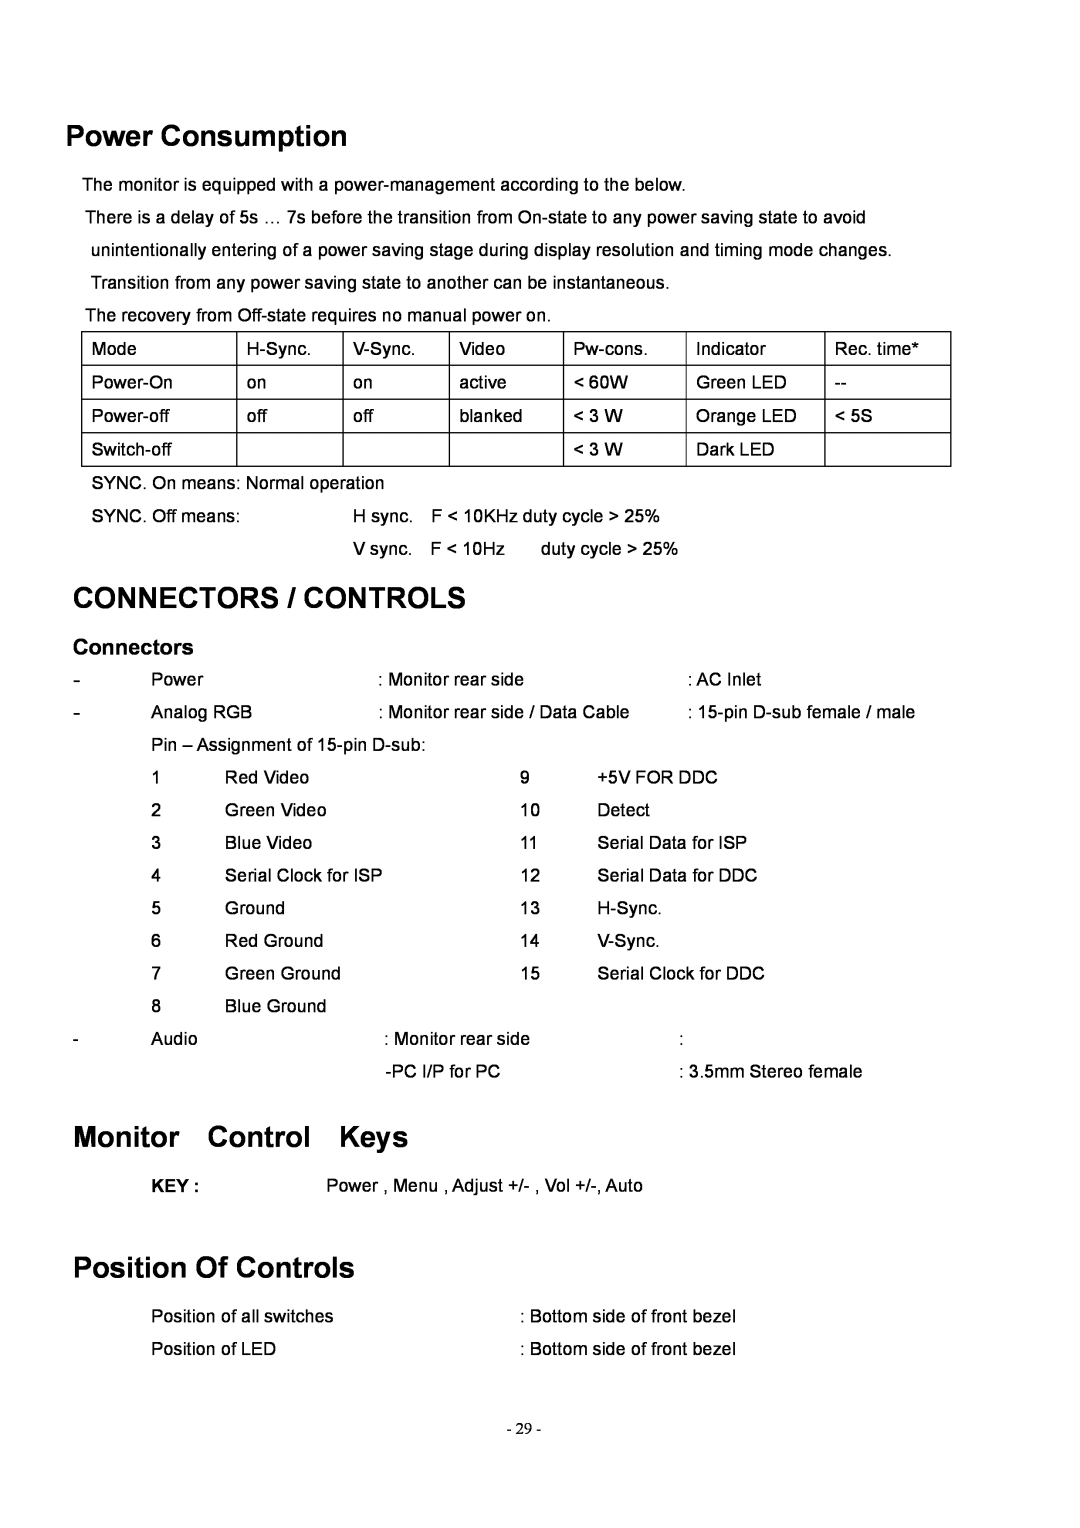 Acer AL1912 manual Power Consumption, Connectors / Controls, Monitor Control Keys, Position Of Controls 